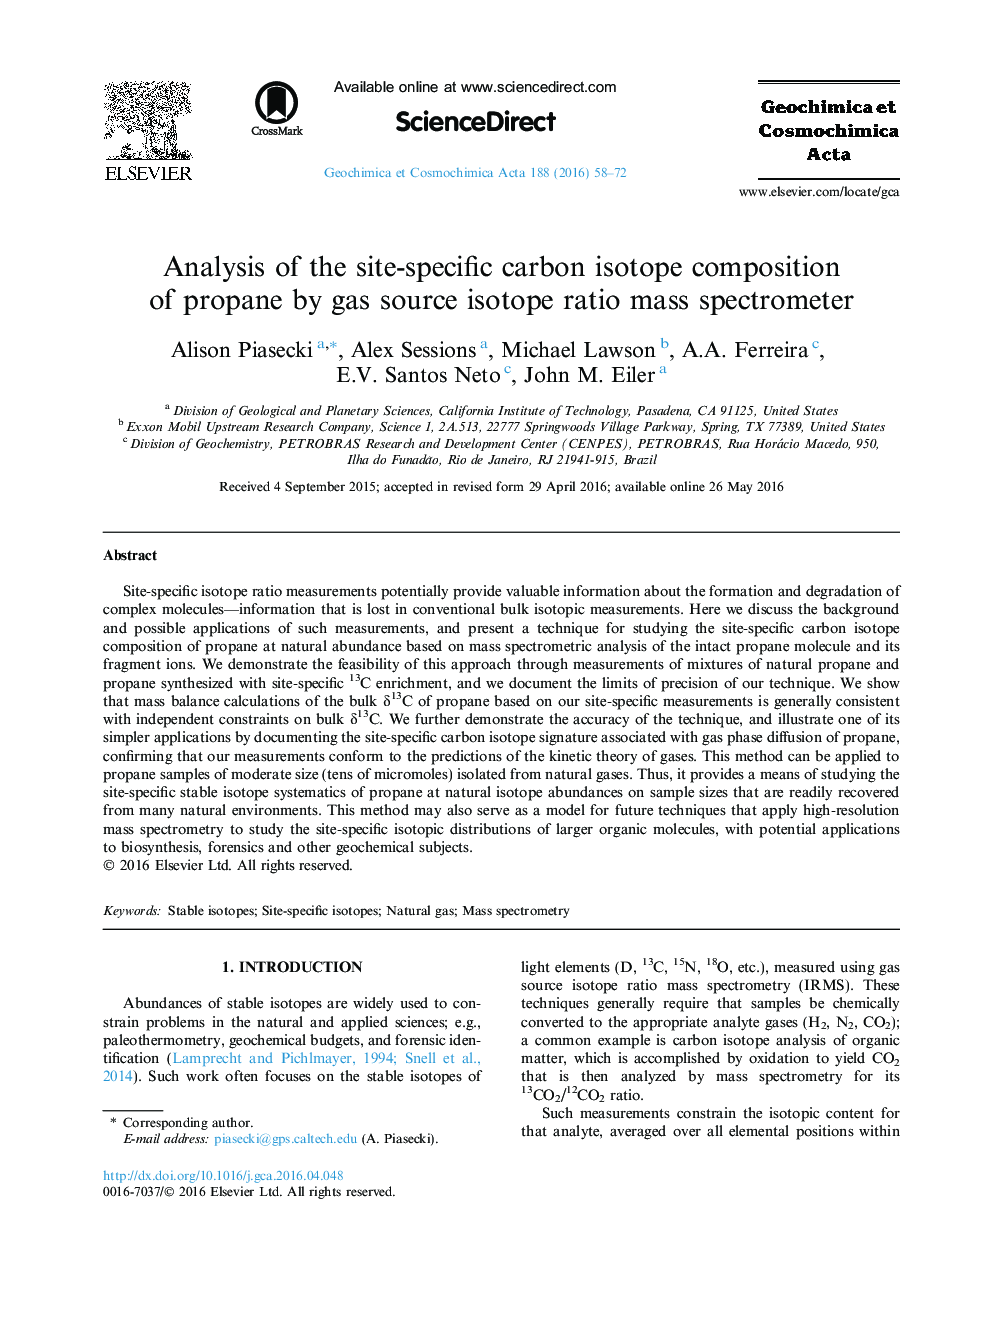 تجزیه و تحلیل ترکیبات ایزوتوپ کربن از پروپان به وسیله اسپکترومتر جفتی نسبت به ایزوتوپ منبع گاز 